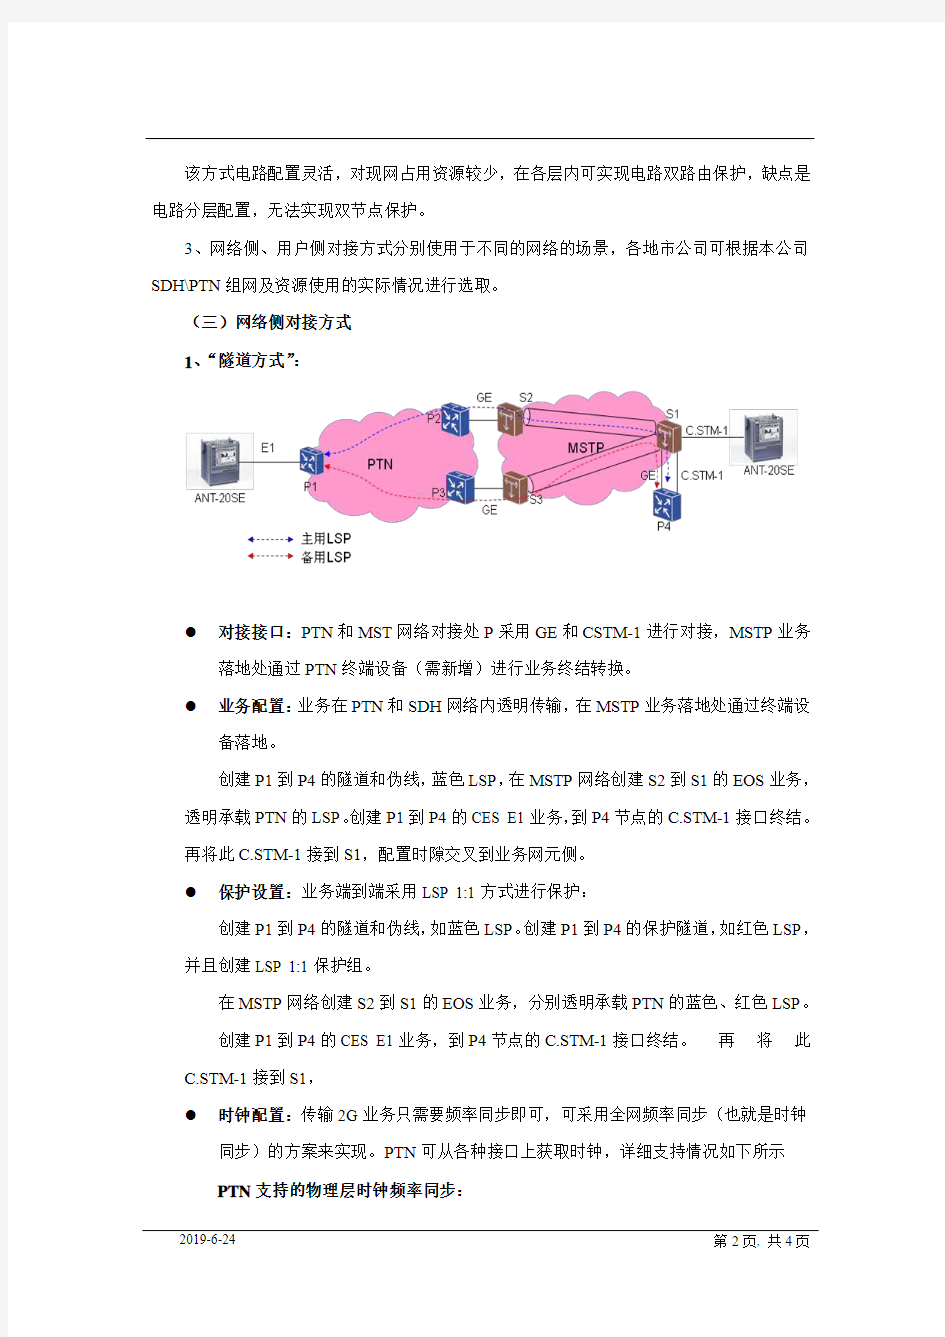 中国移动广东分公司SDH与PTN网络对接指导意见(暂行)